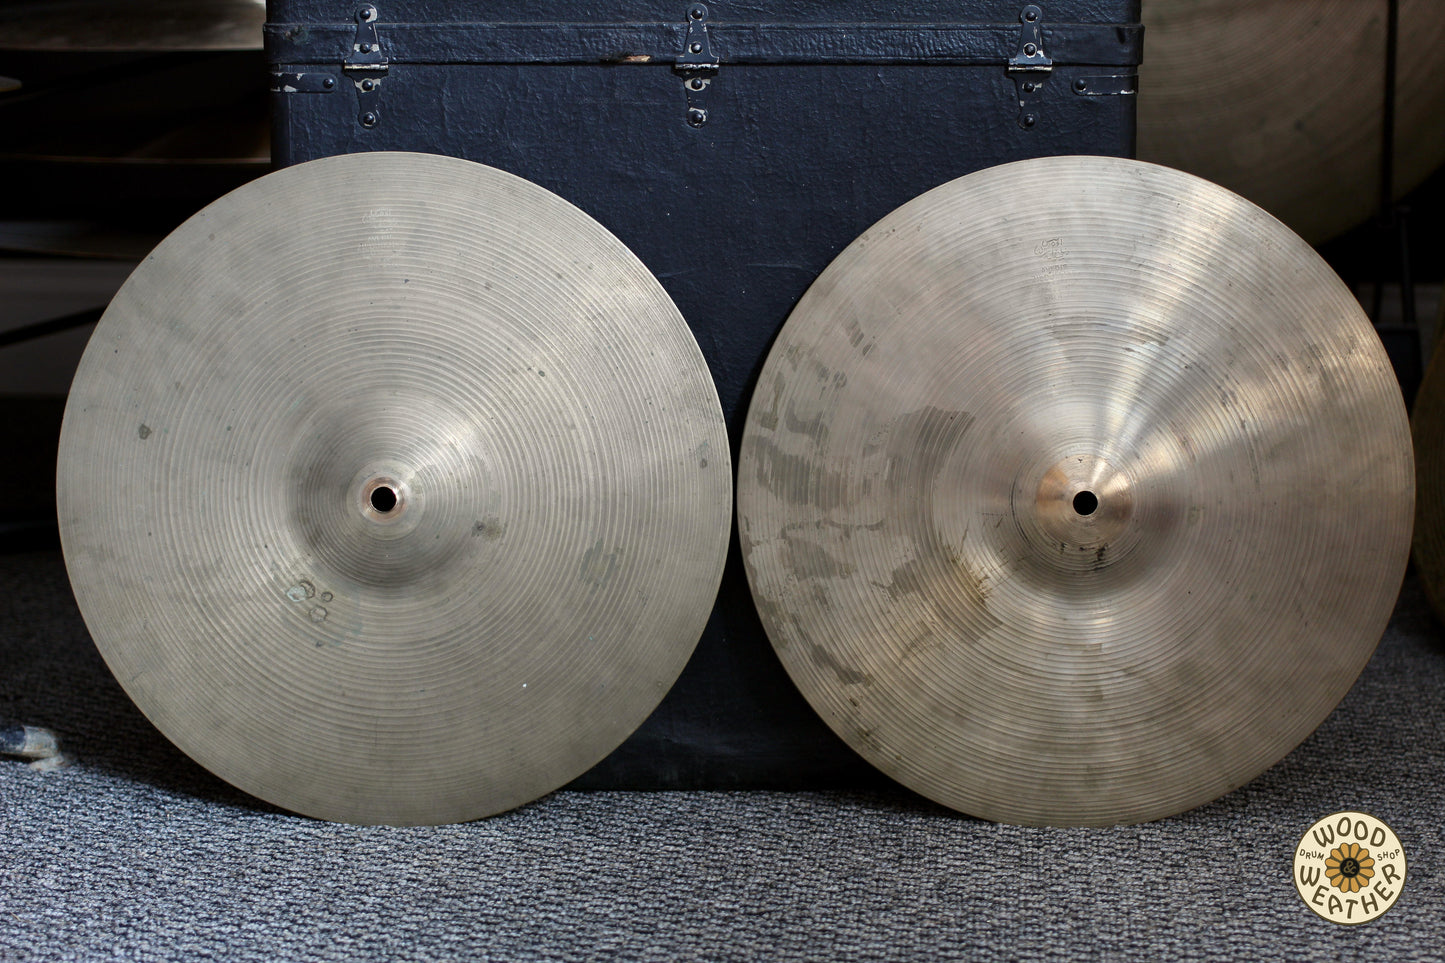 1960s A. Zildjian 14" New Beat Hi-Hat Cymbals 850/1330g